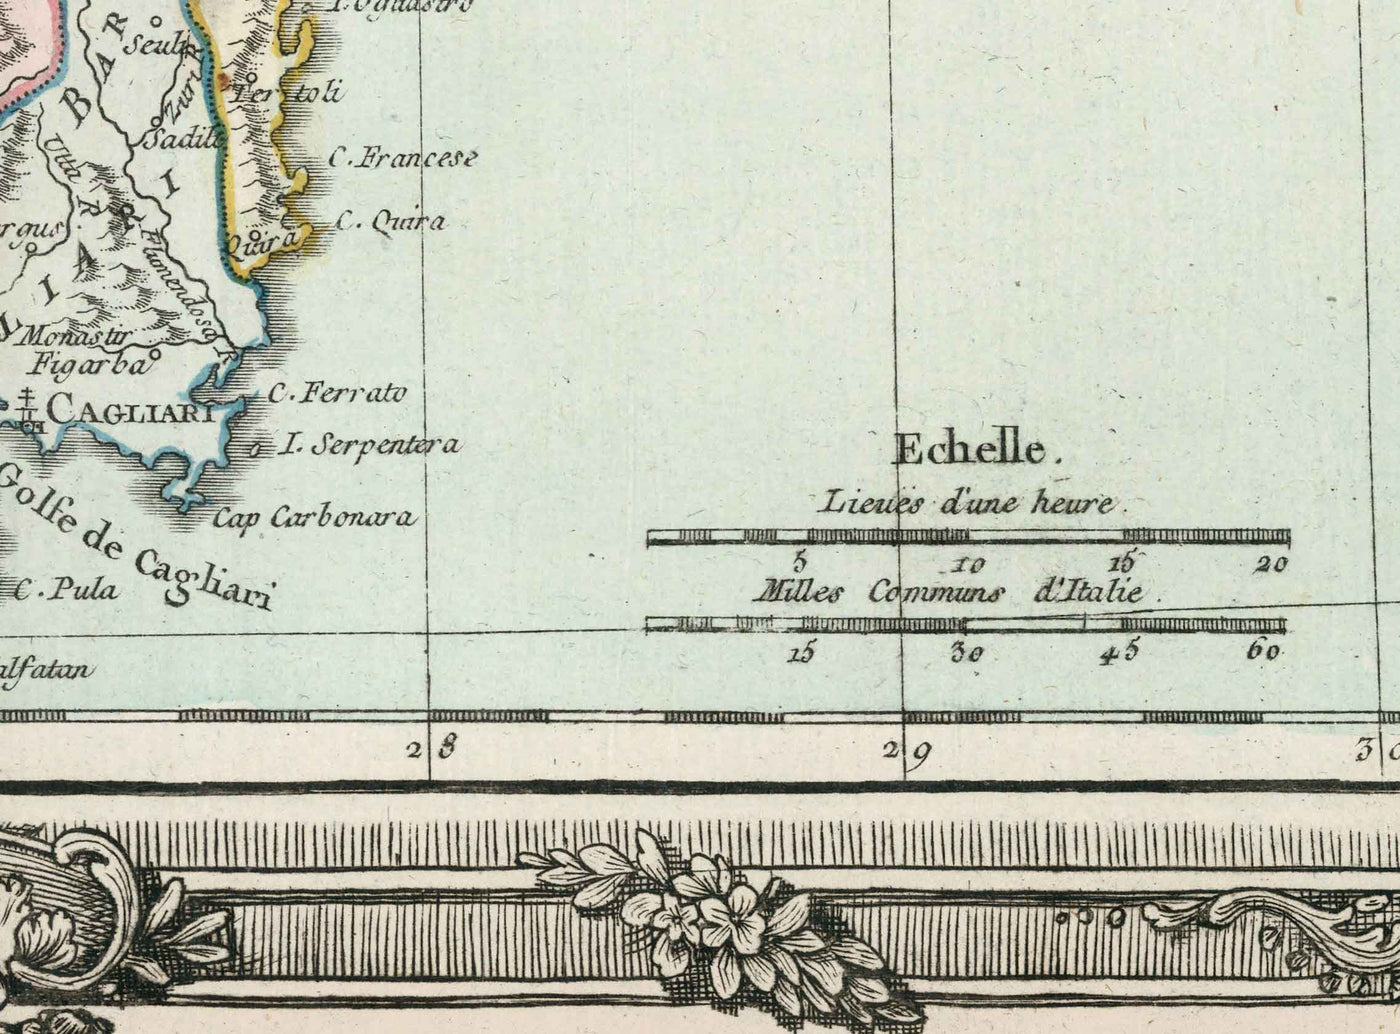 Old Map of Sardinia & Corsica in 1786 by Louis Charles Desnos - Sassari, Cagliari, Porto-Vecchio, Bastia, Oristano